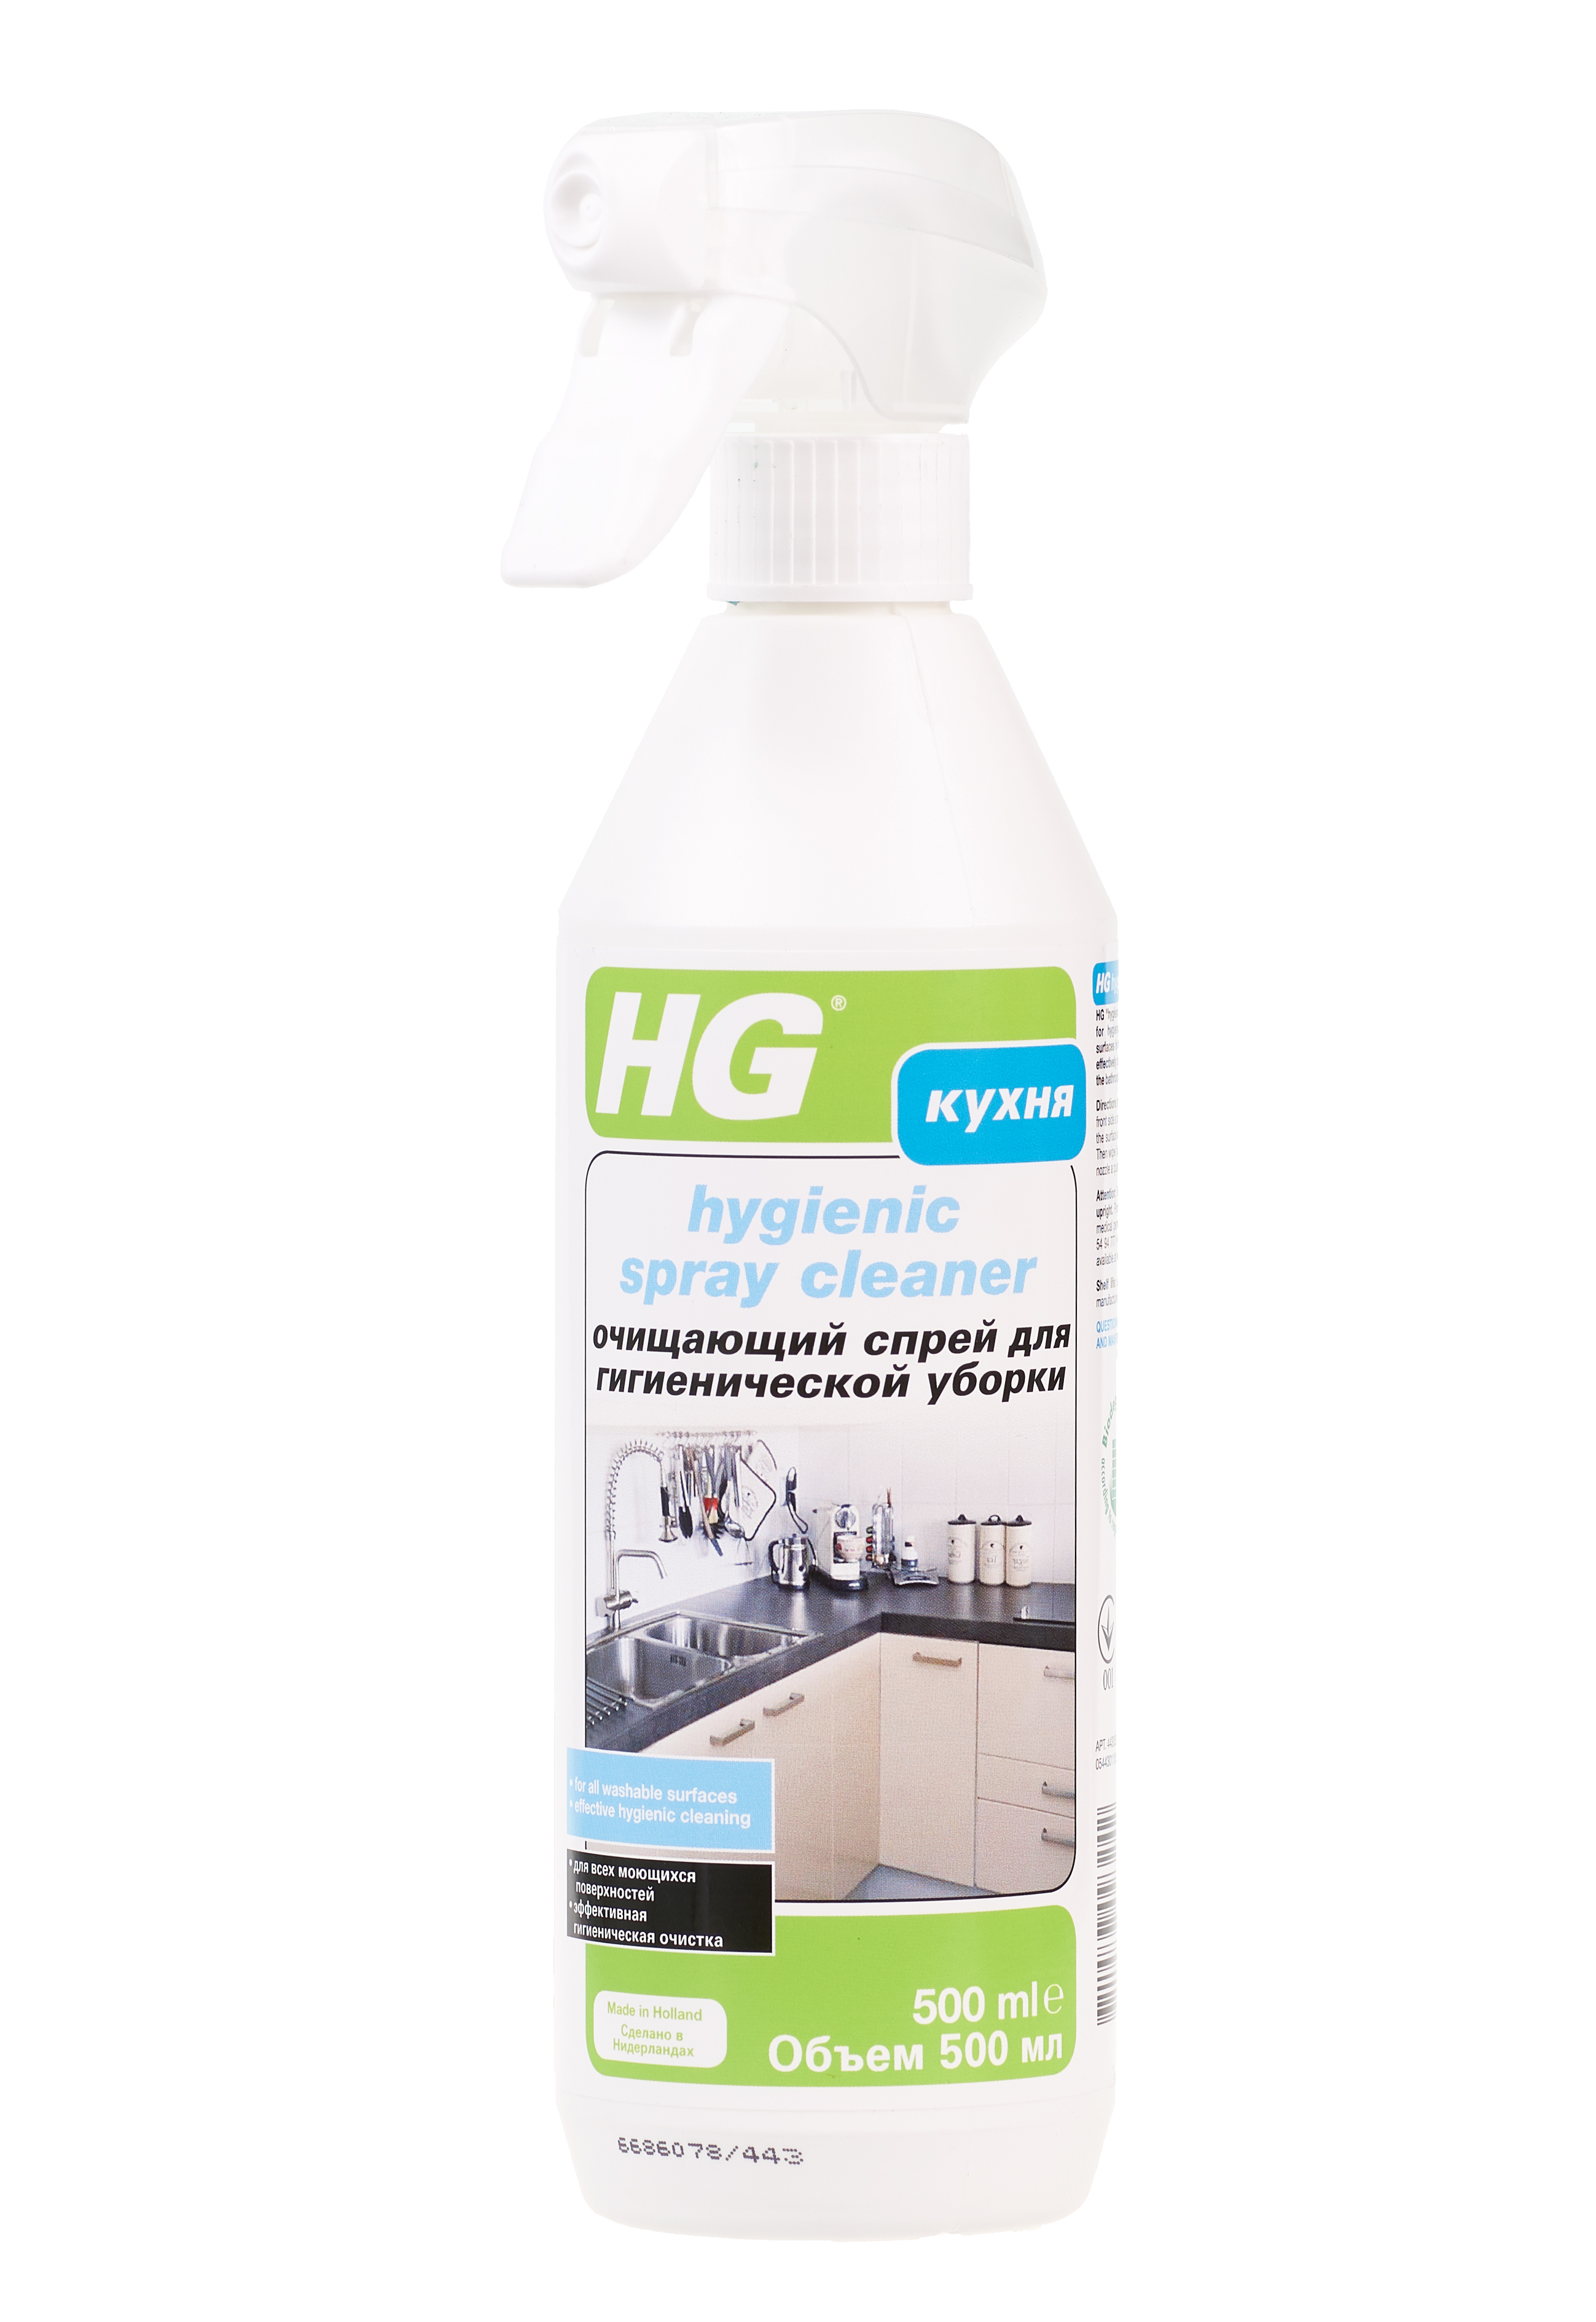 Очищающий спрей для гигиеничной уборки HG 443050161